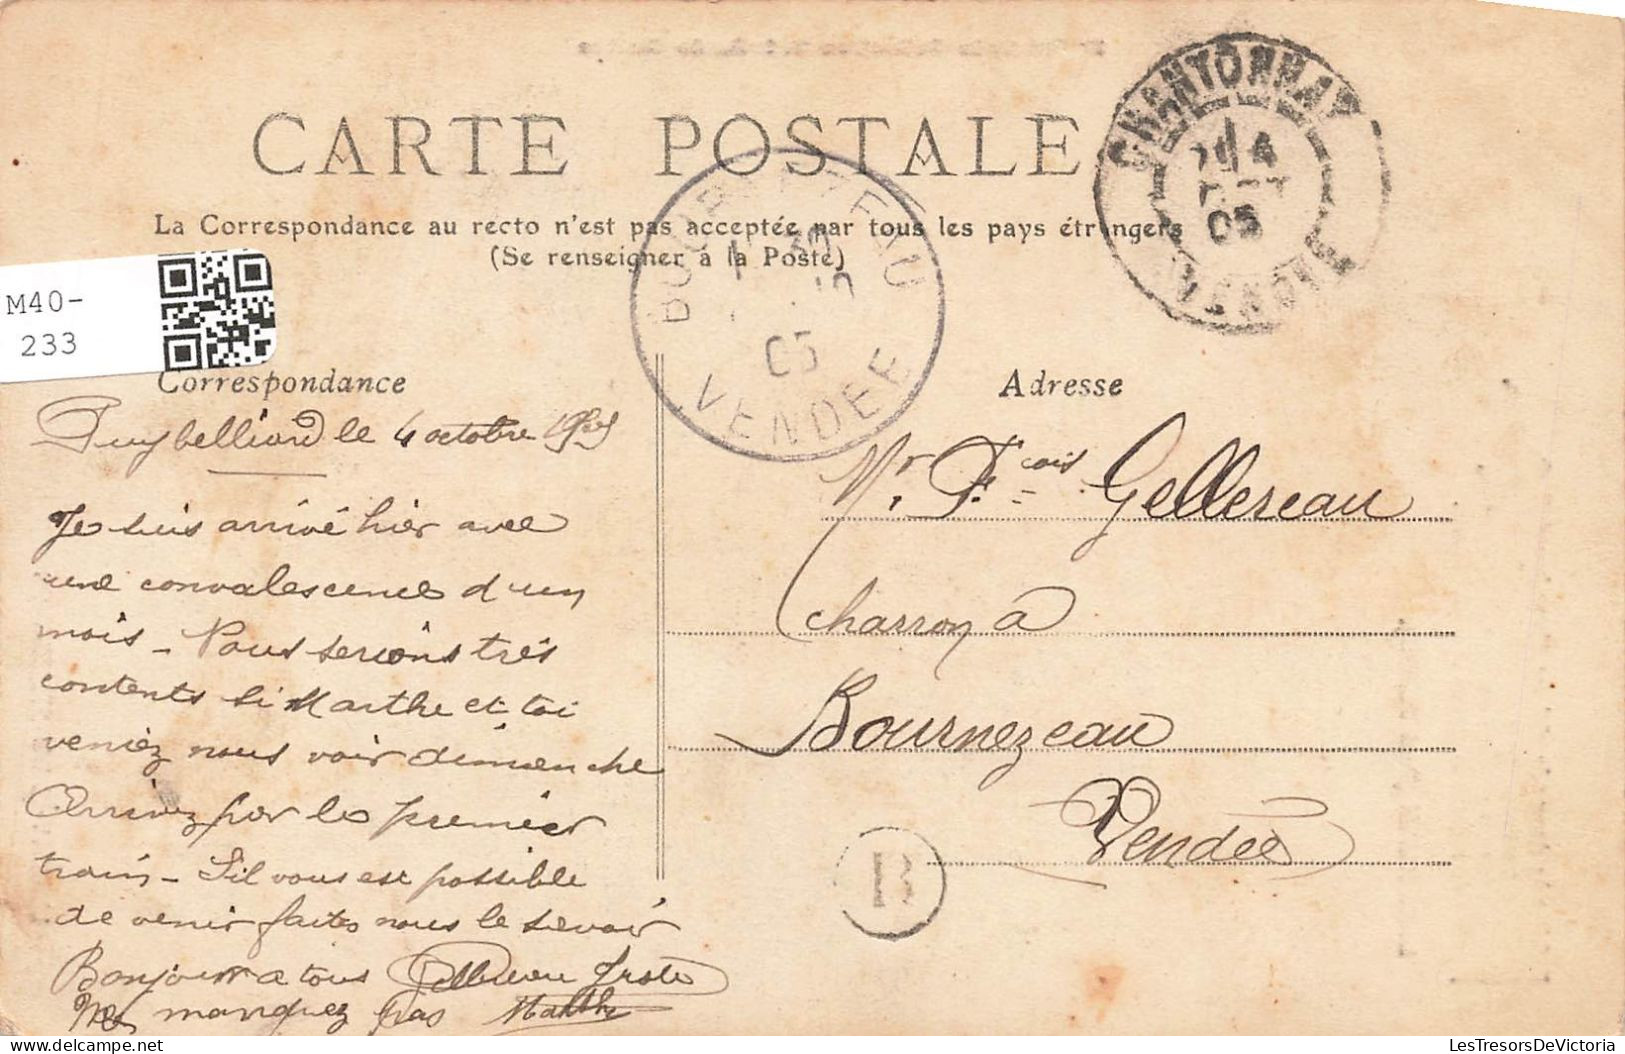 FANTAISIE - Femme - L'Arrivée Du Printemps - Louis Papin - Jeune Femme Avec Une Fillette - Carte Postale Ancienne - Women